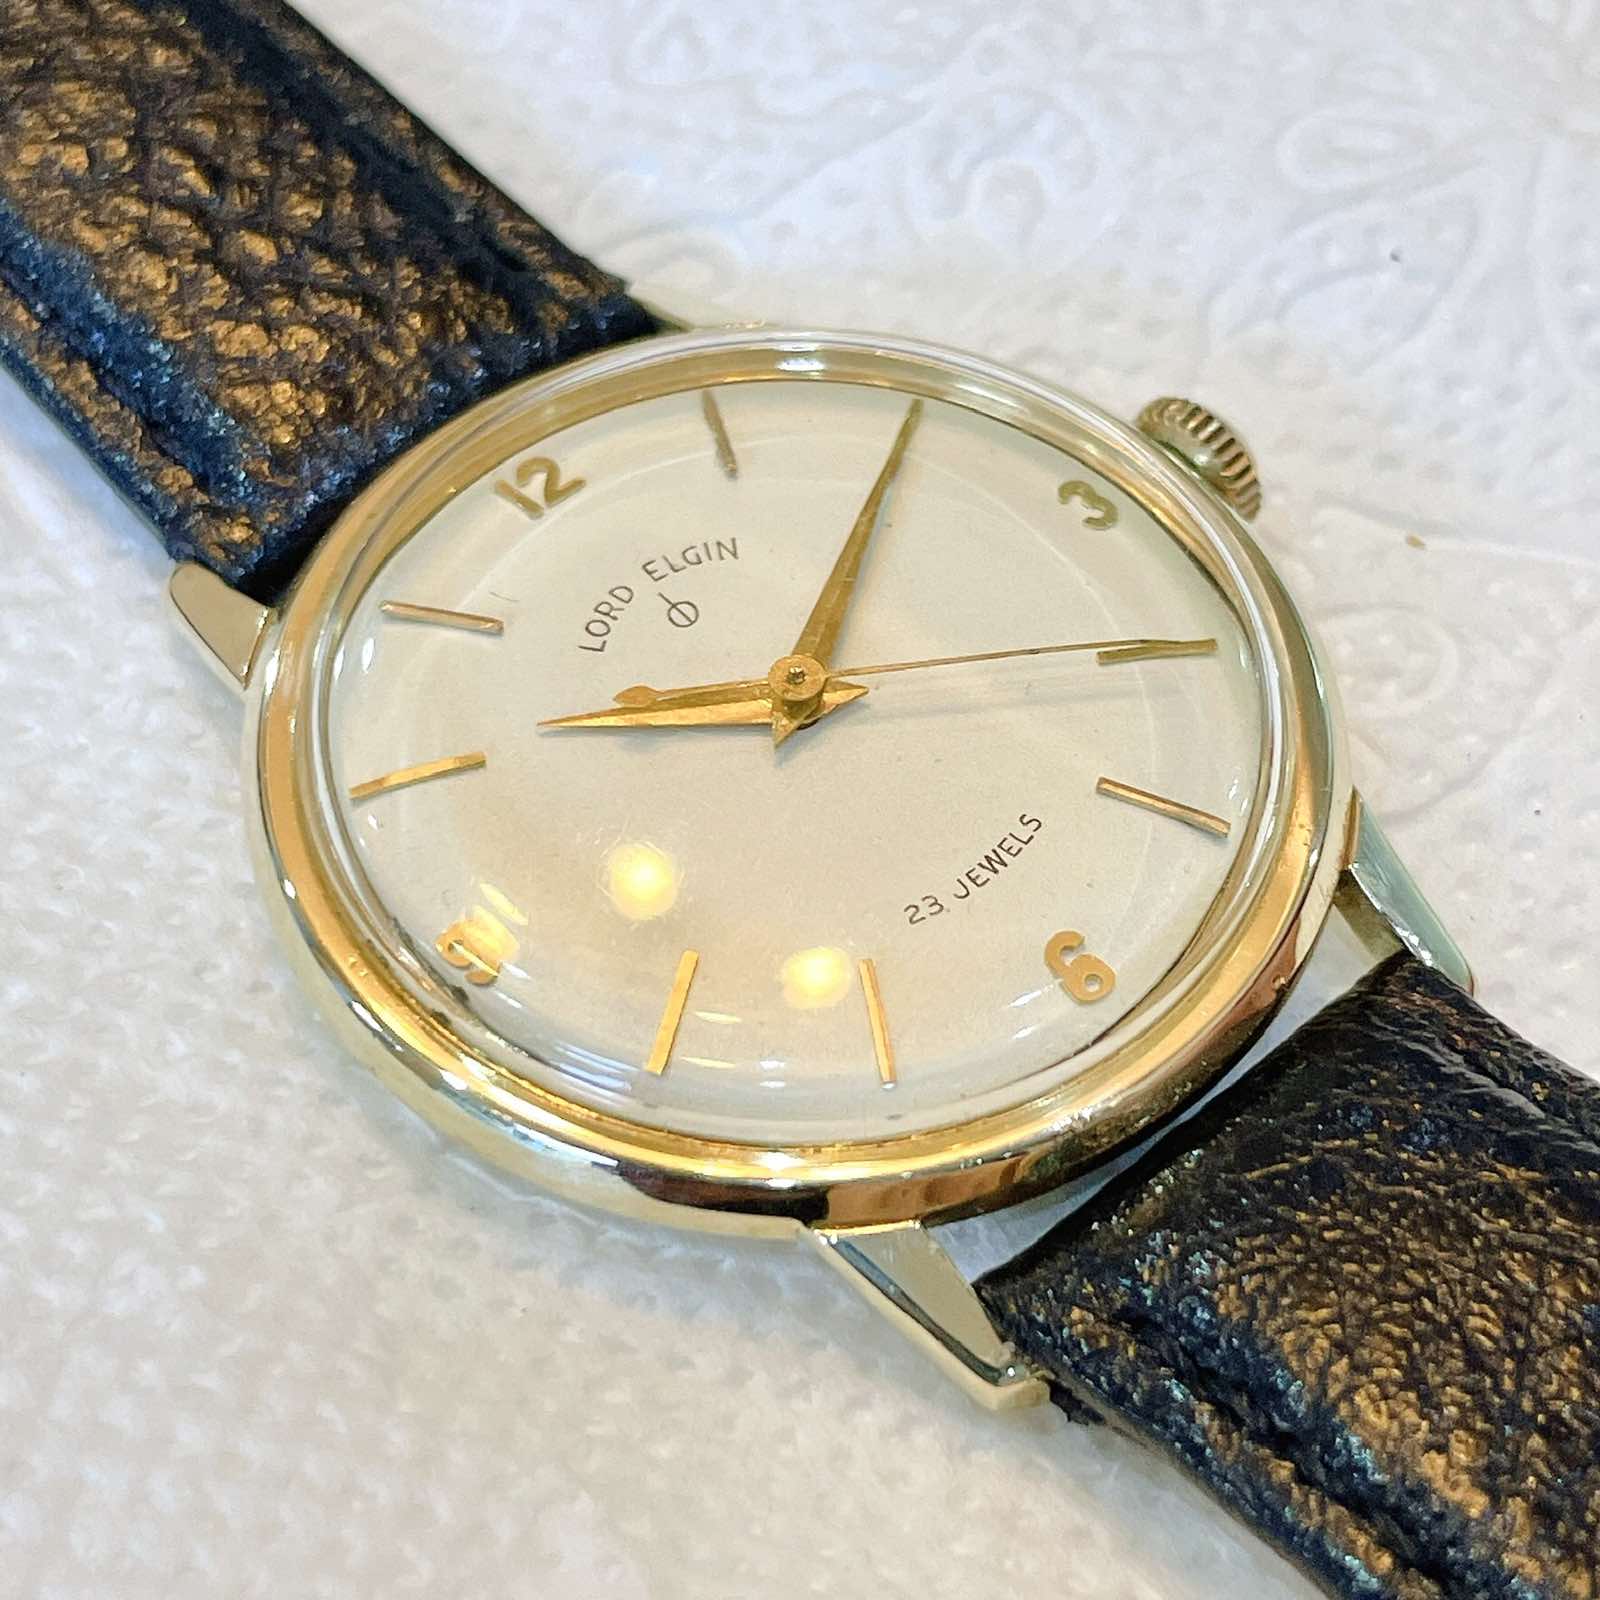 Đồng hồ cổ Lord Elgin lên dây vàng đúc 10k chính hãng Mỹ 